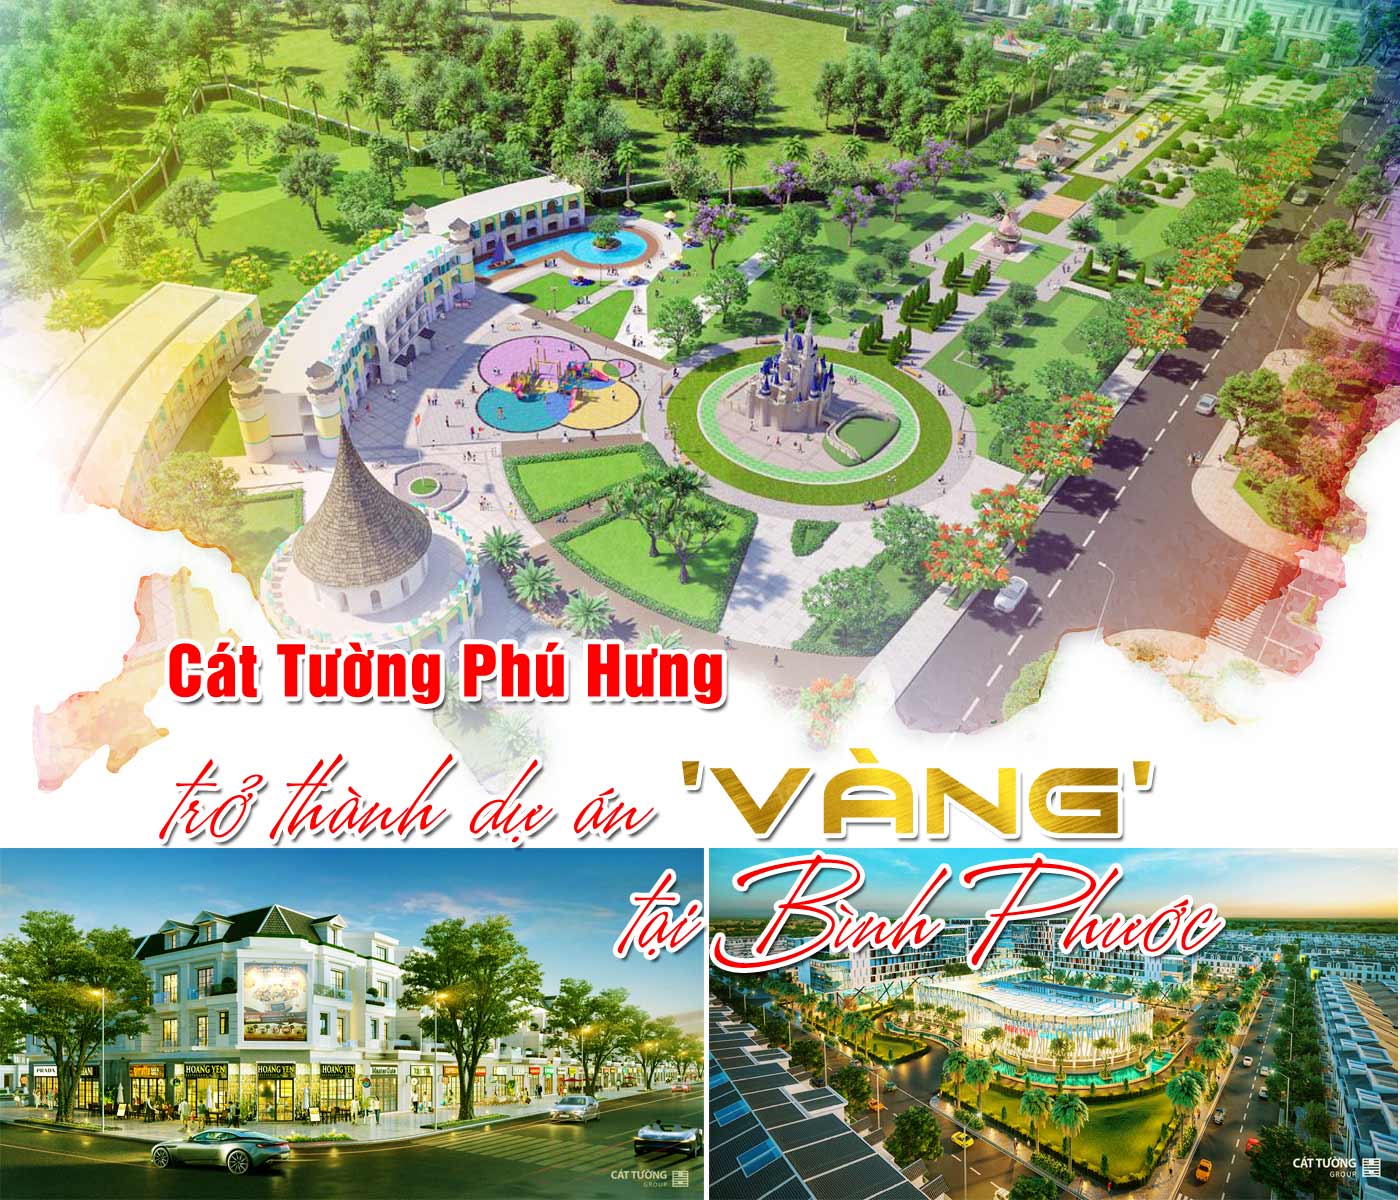 Cát Tường Phú Hưng trở thành dự án vàng tại Bình Phước - Ảnh 1